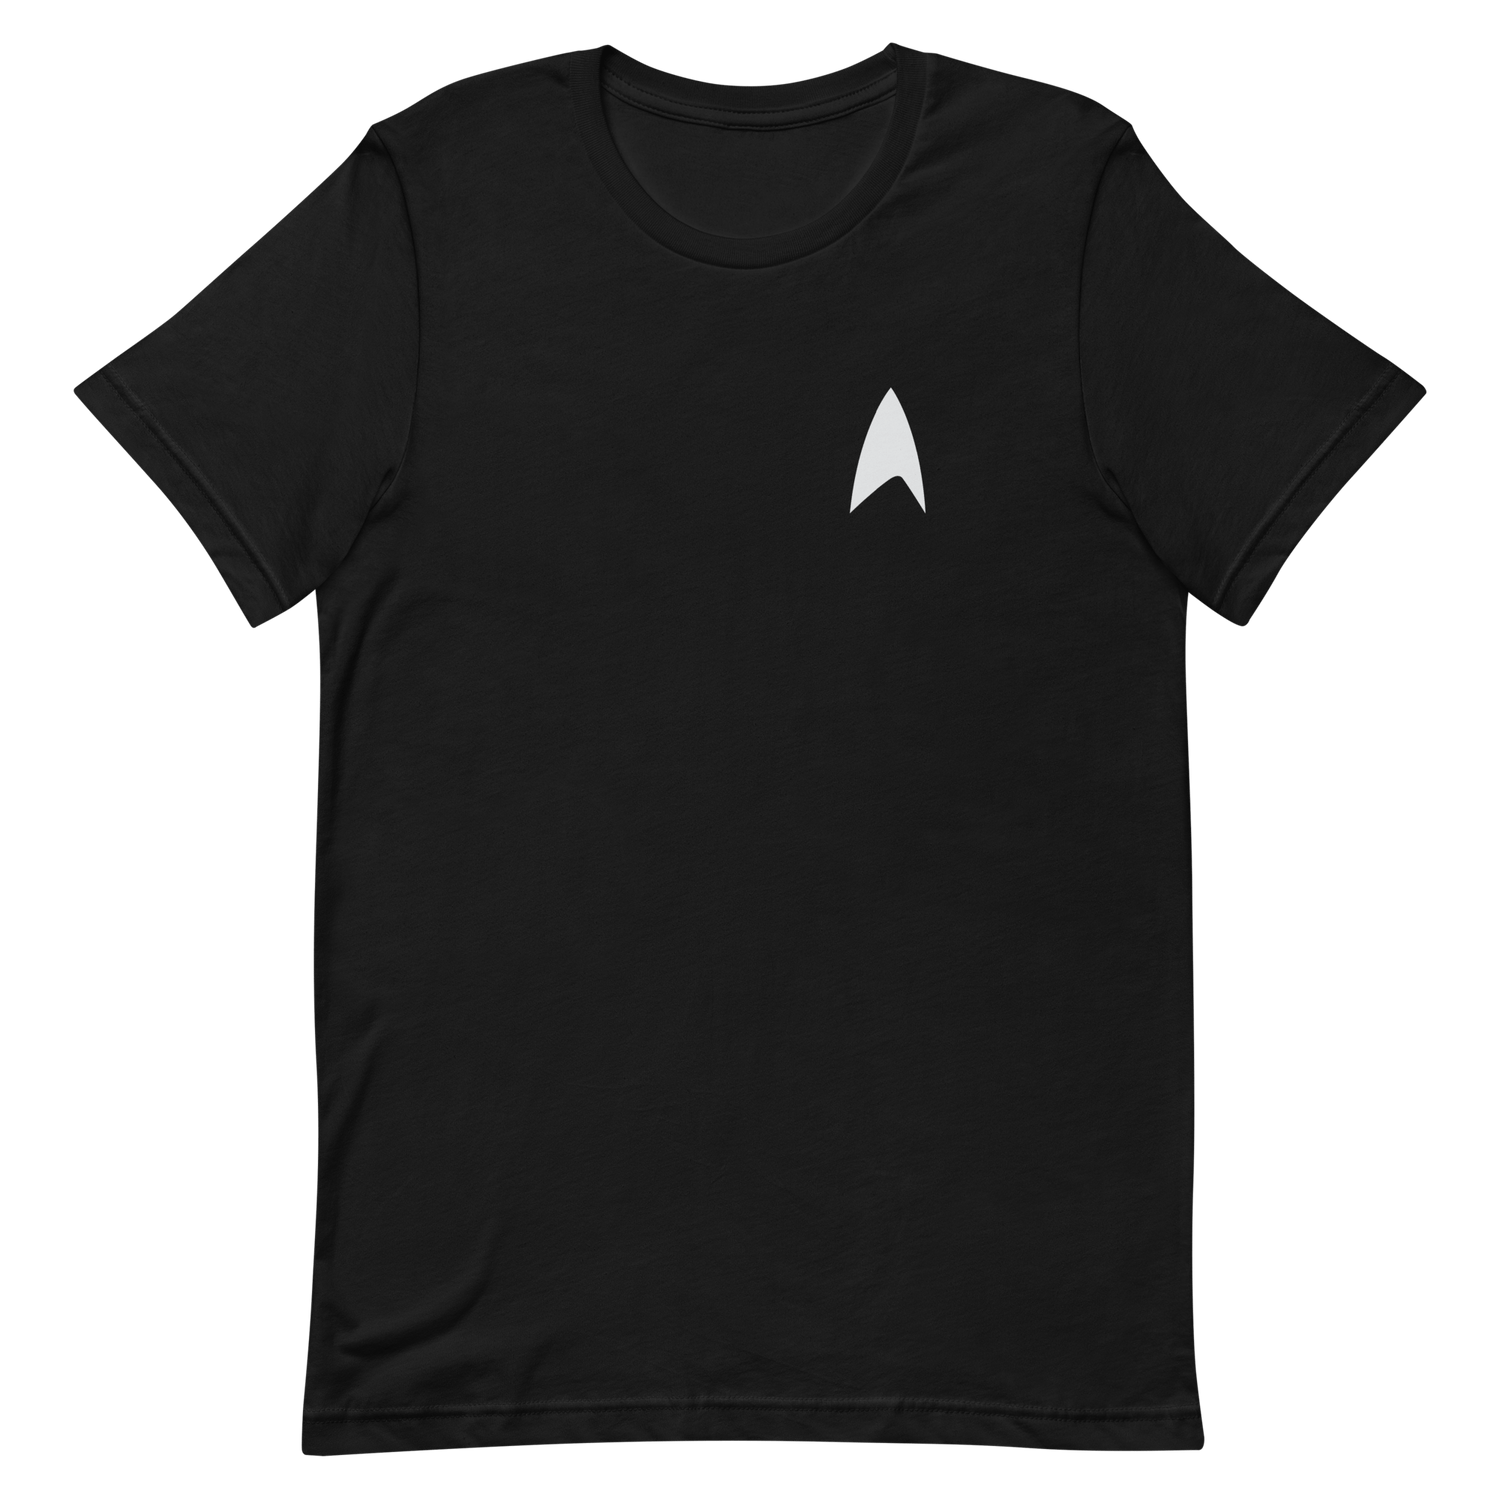 Star Trek: Lower Decks Cool Scrappy Underdogs Unisex Premium T - Shirt - Paramount Shop